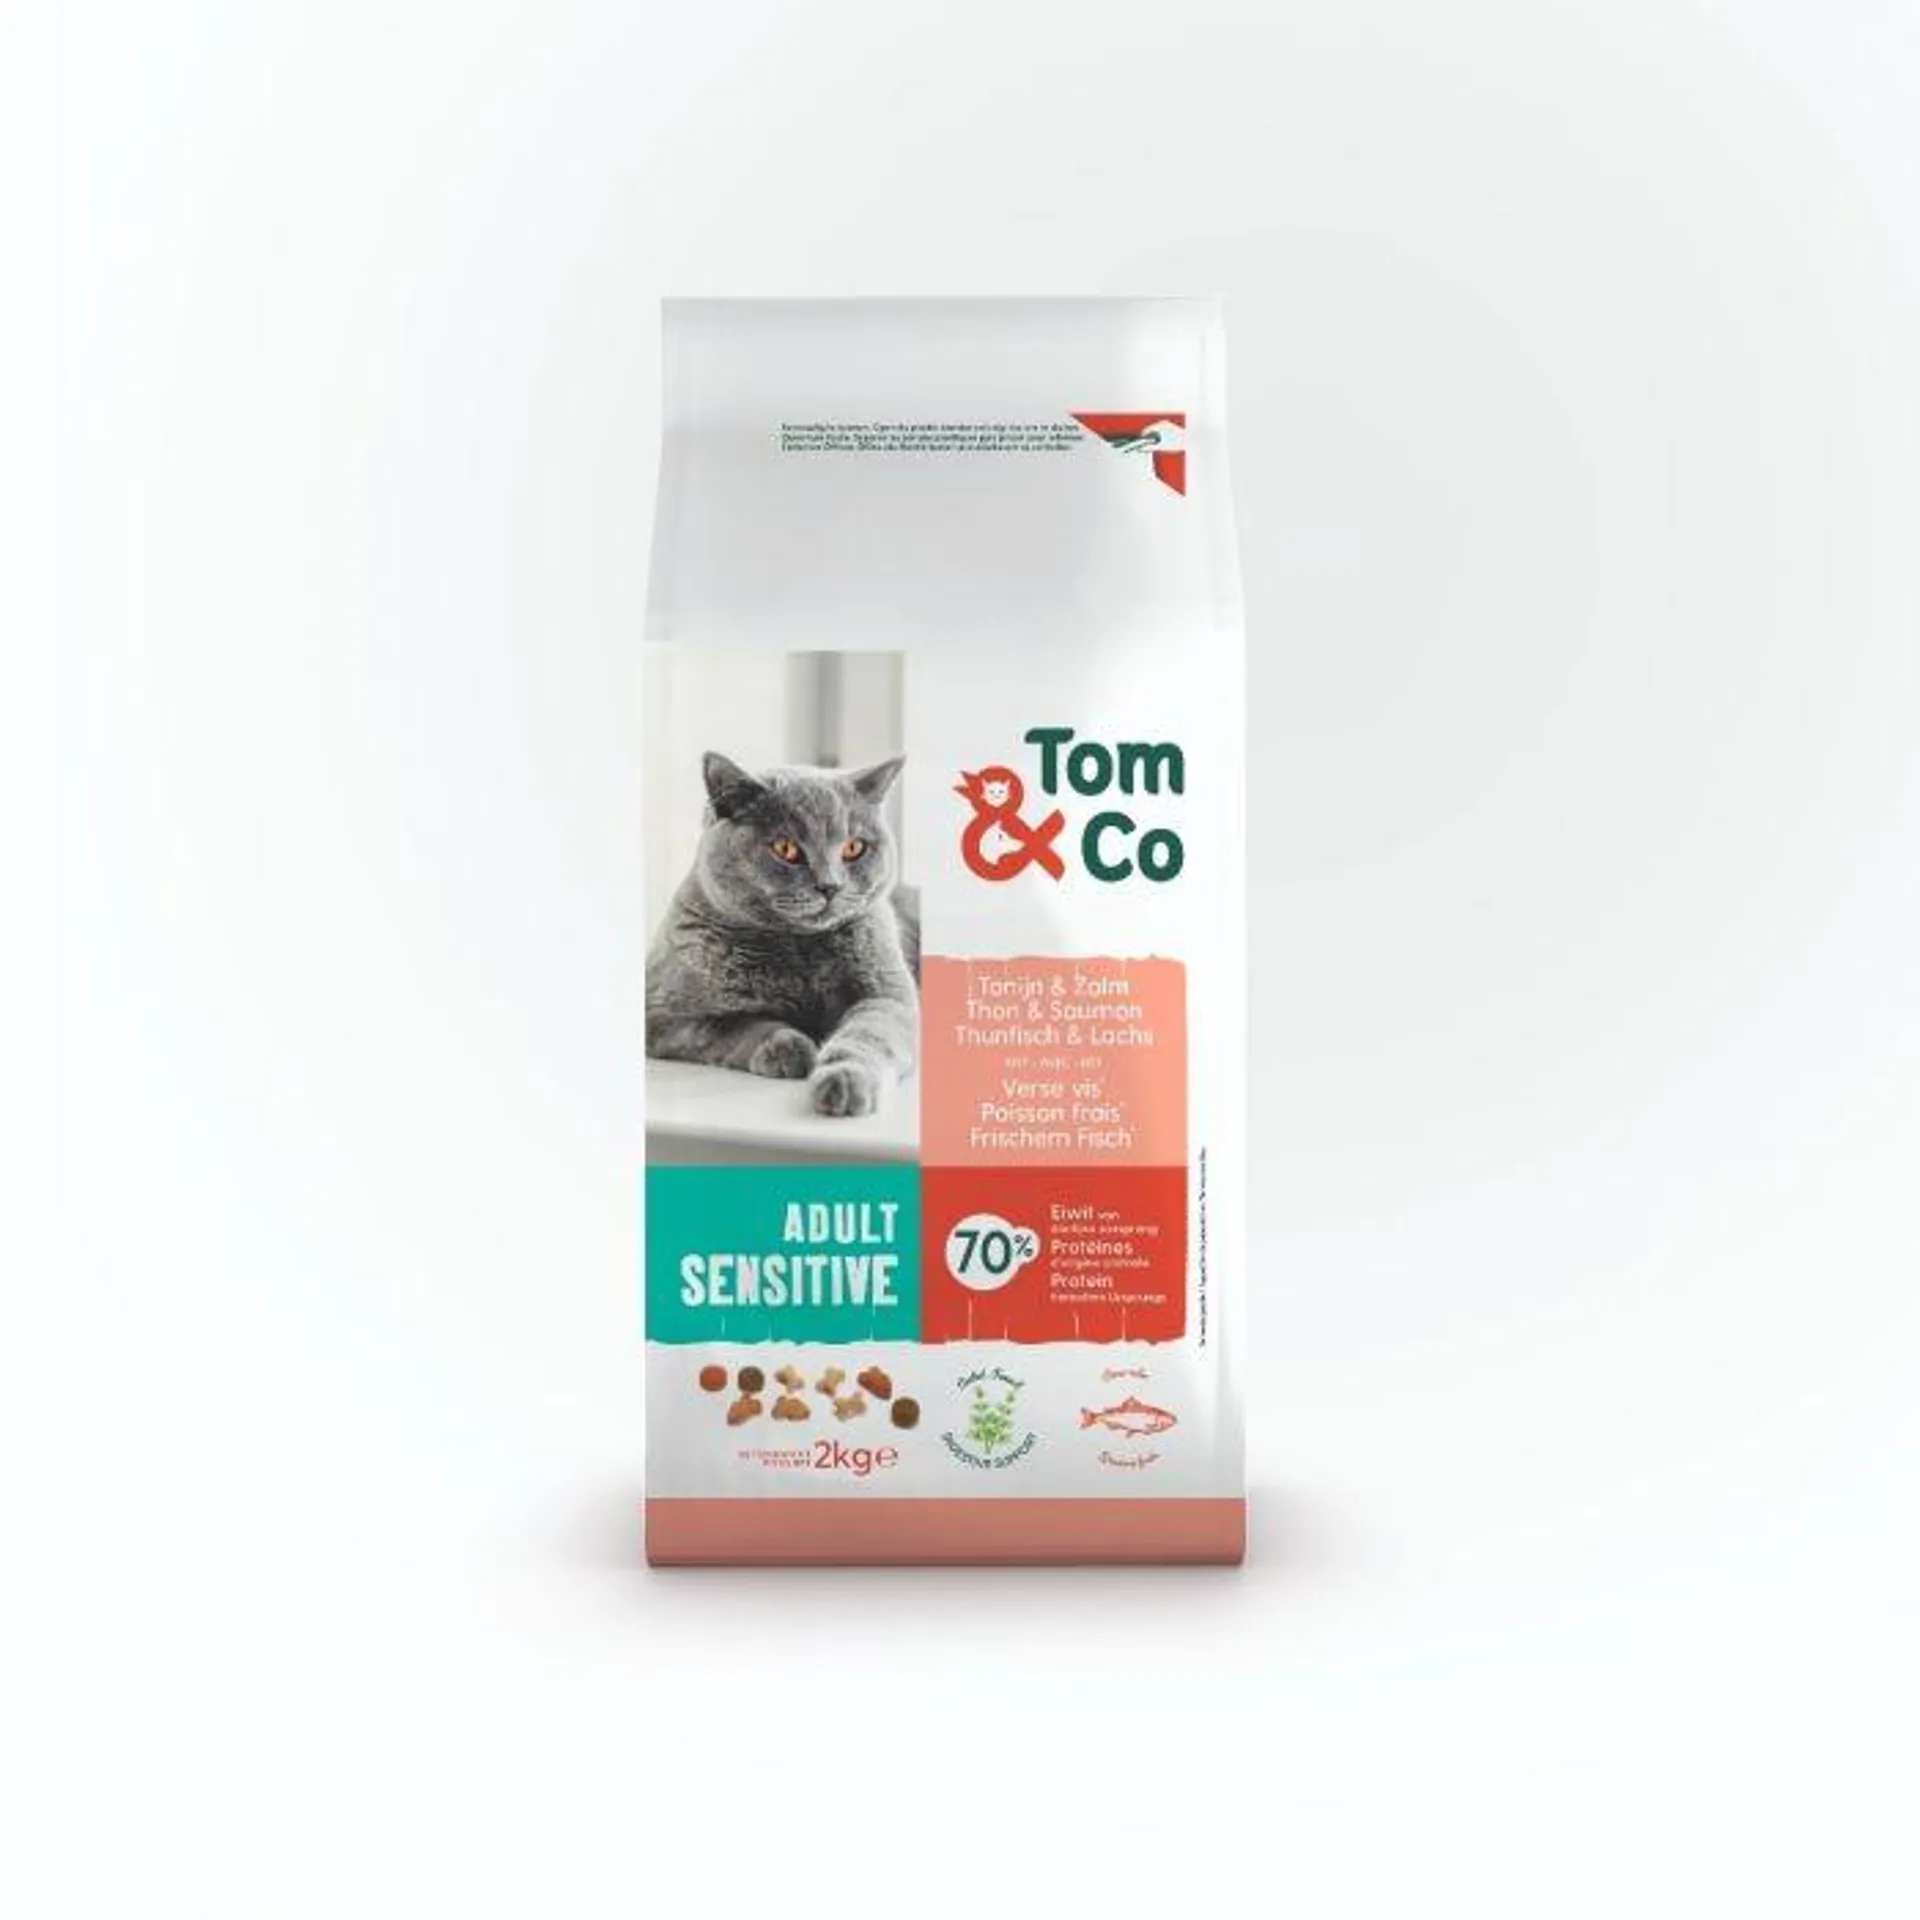 Tom&co brokken sensitief voor kat tonijn & zalm adult 2kg